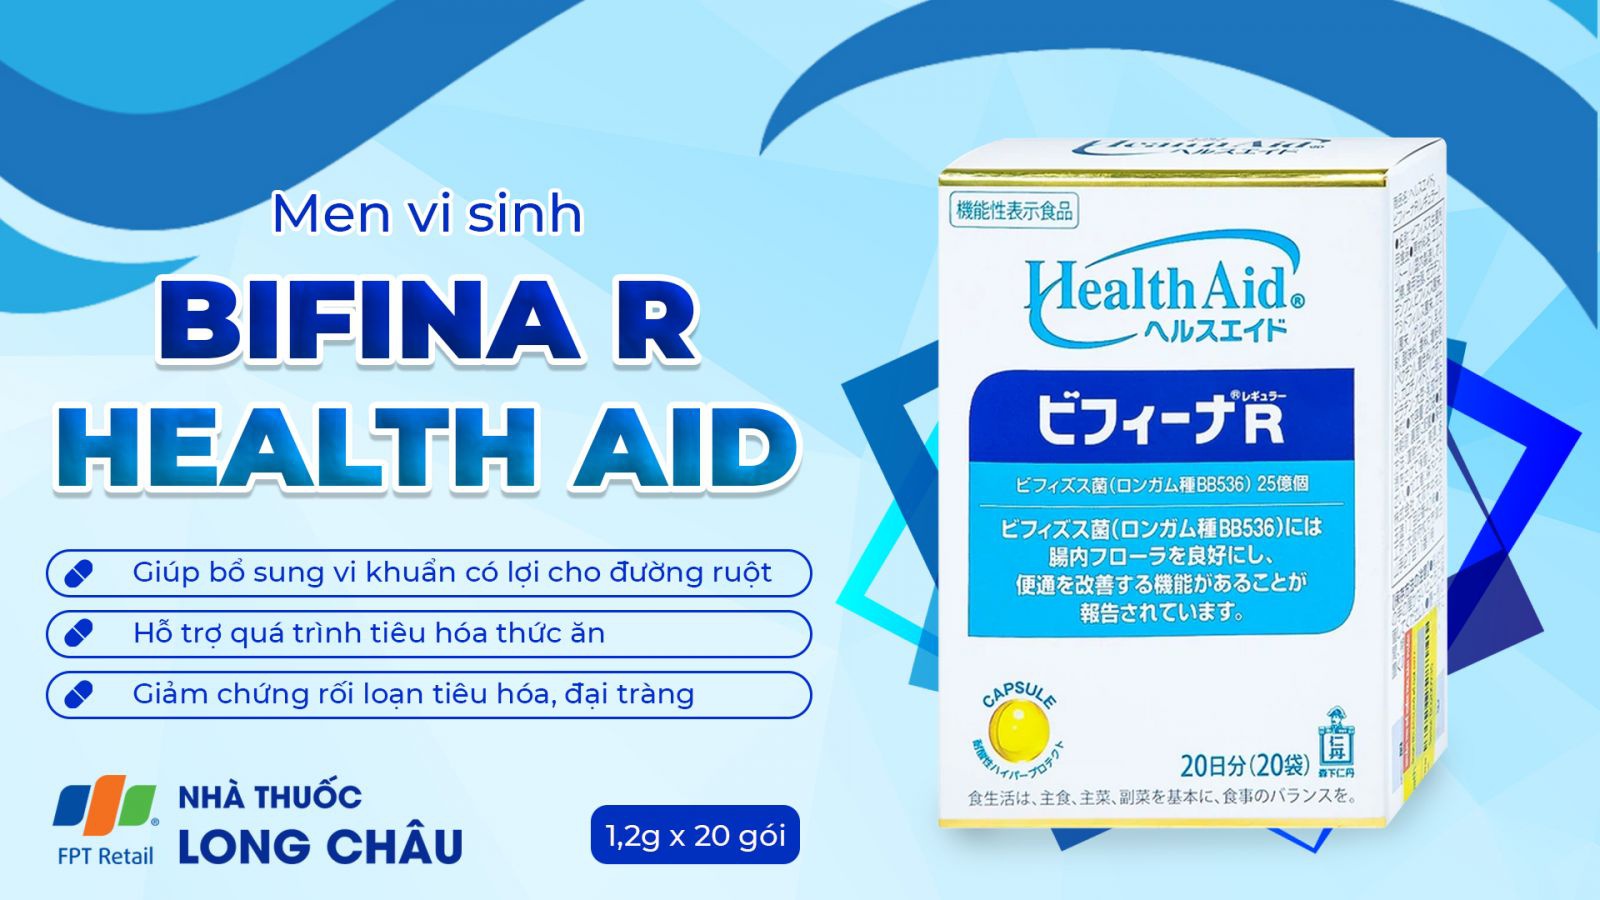 Health Aid Bifina R 2